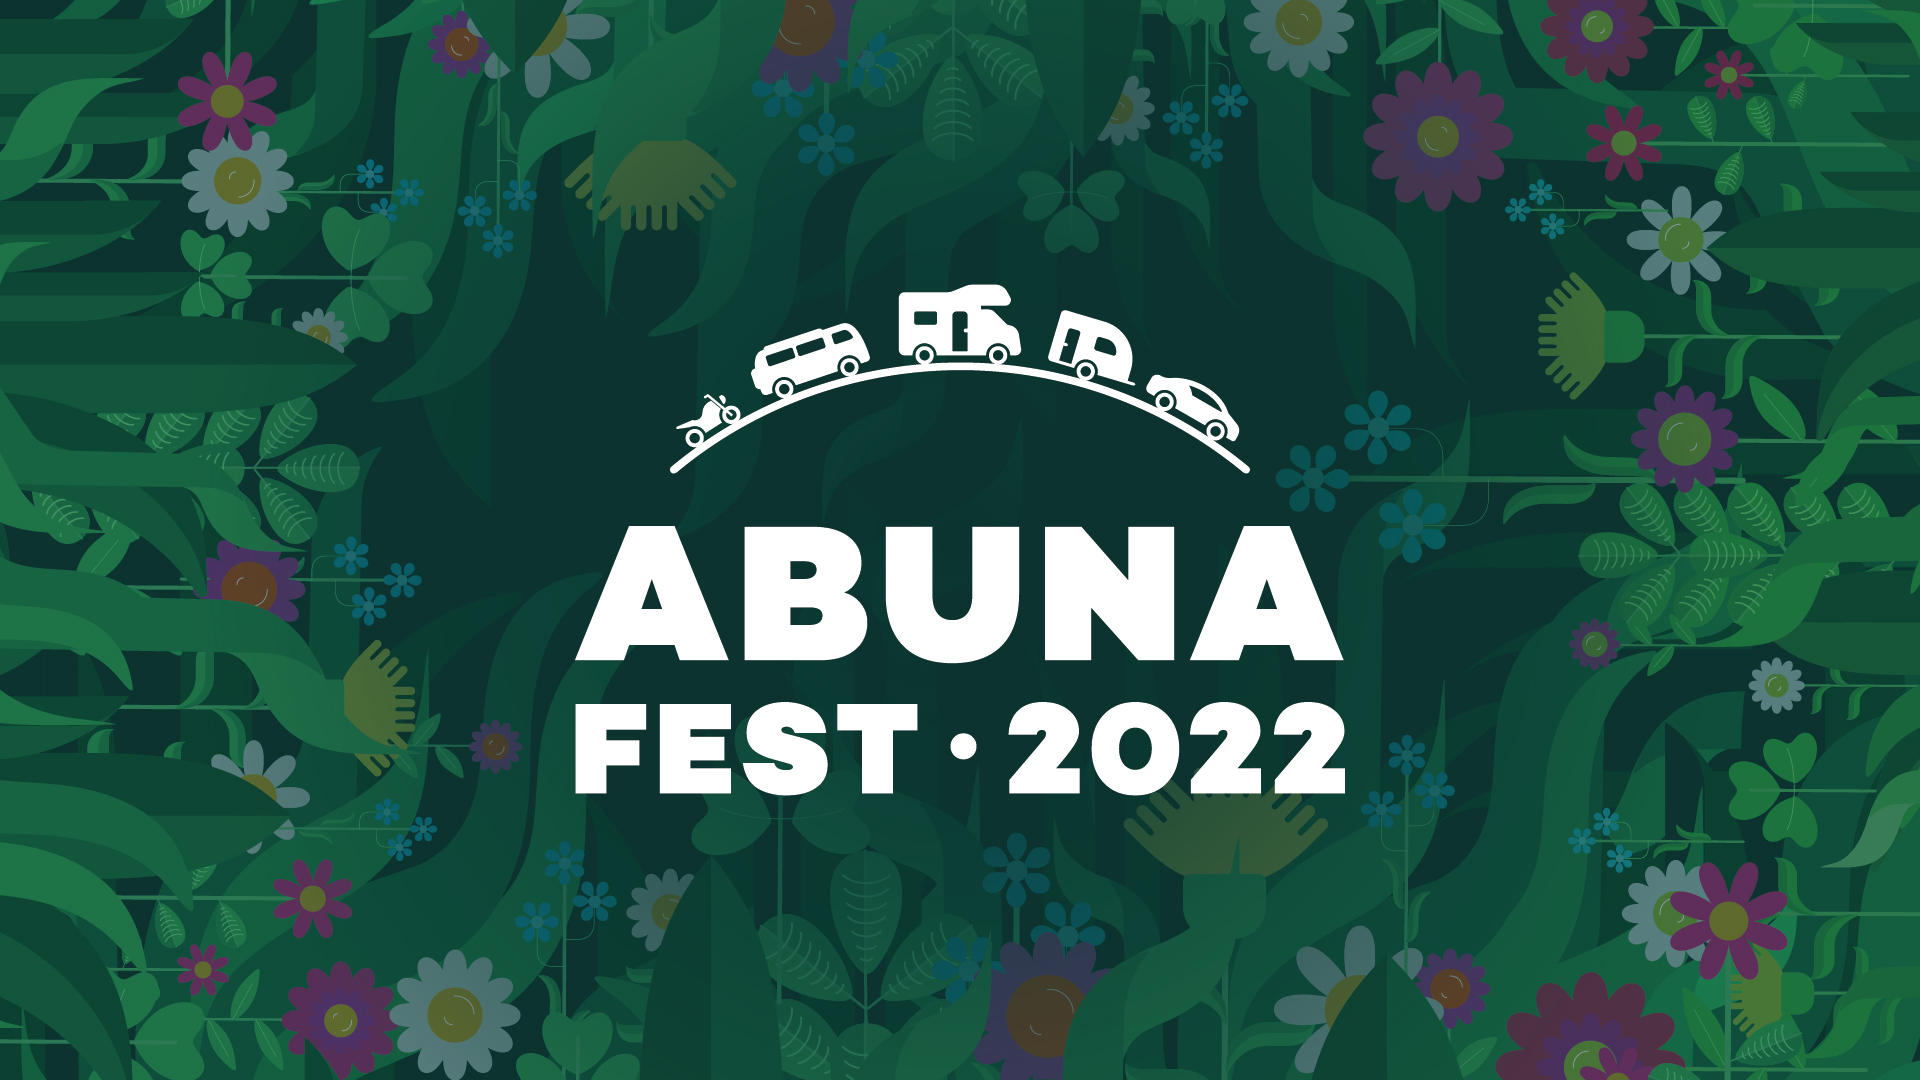 Открыта регистрация на фестиваль Abunafest 2022